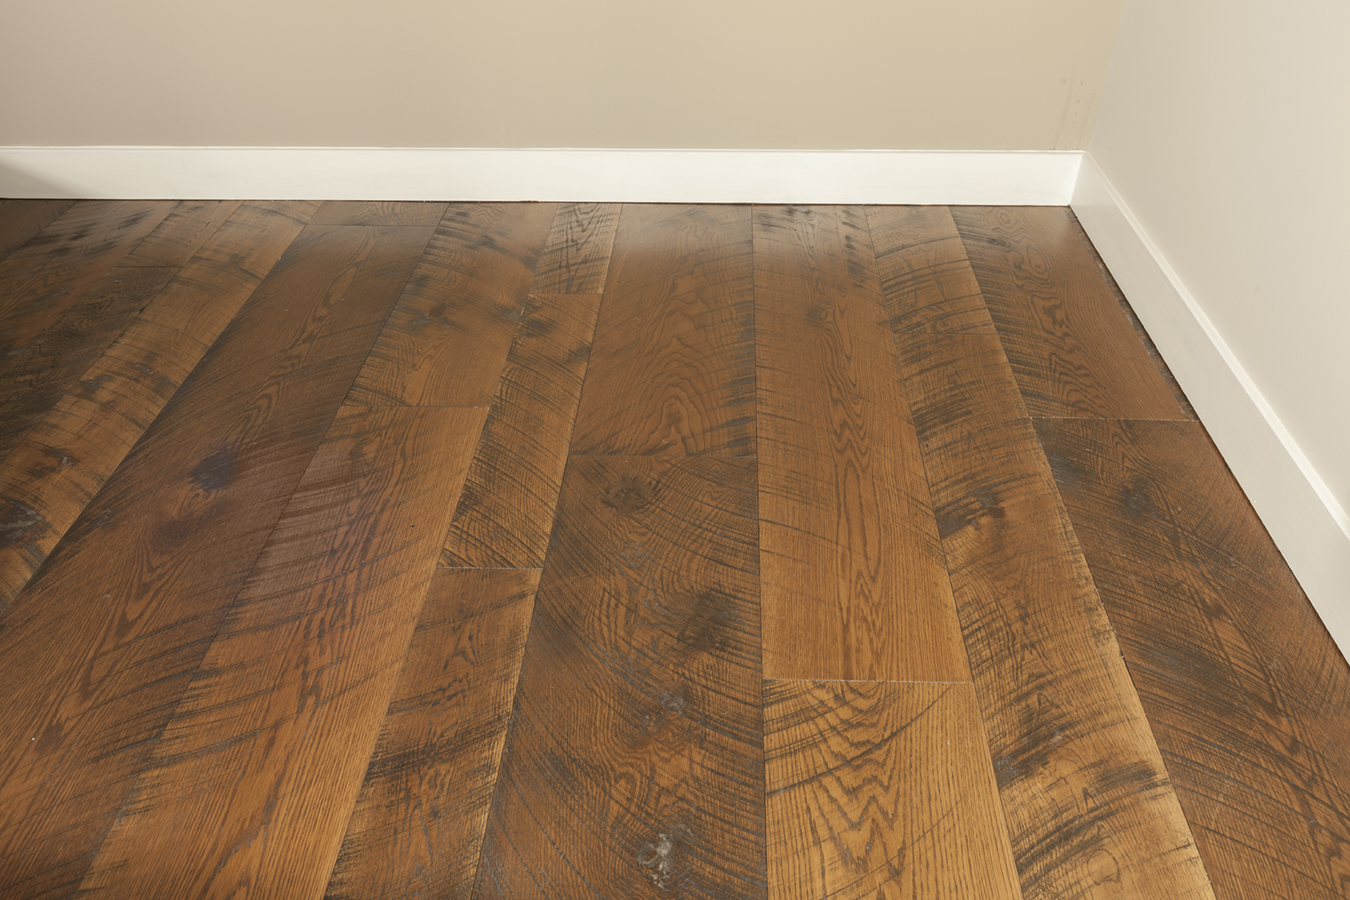 Why Choose Handsed Distressed Wide, Distressed Cherry Hardwood Flooring